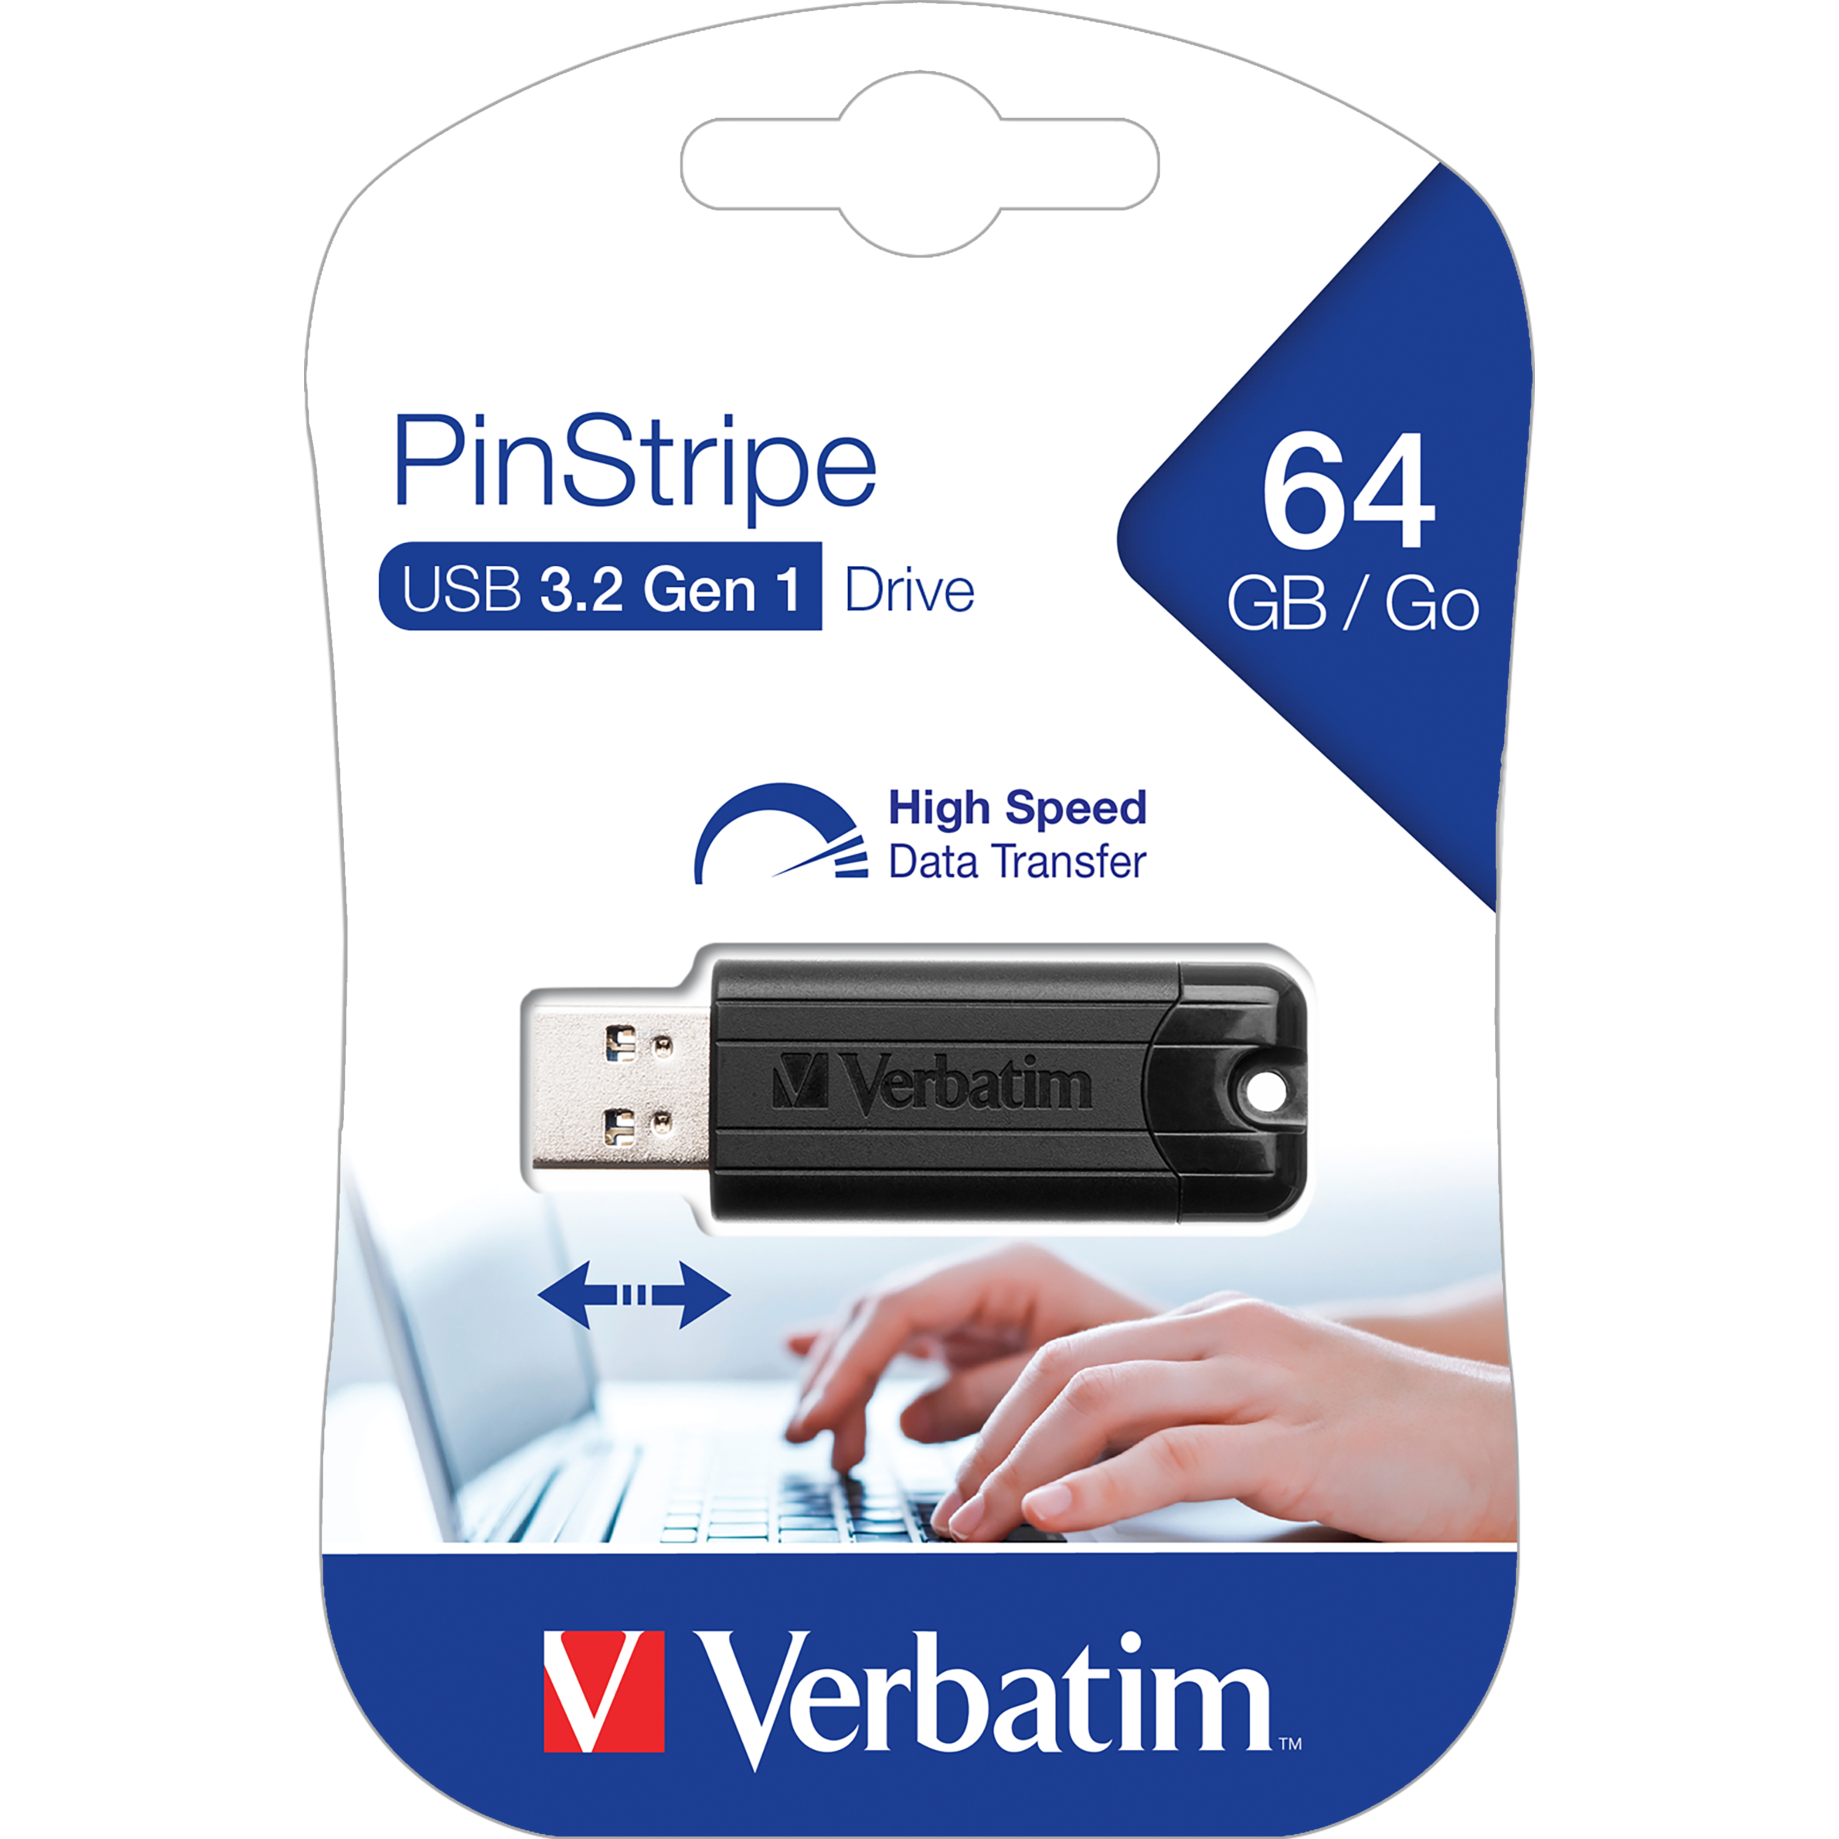 USB 3.0 Stick PinStripe